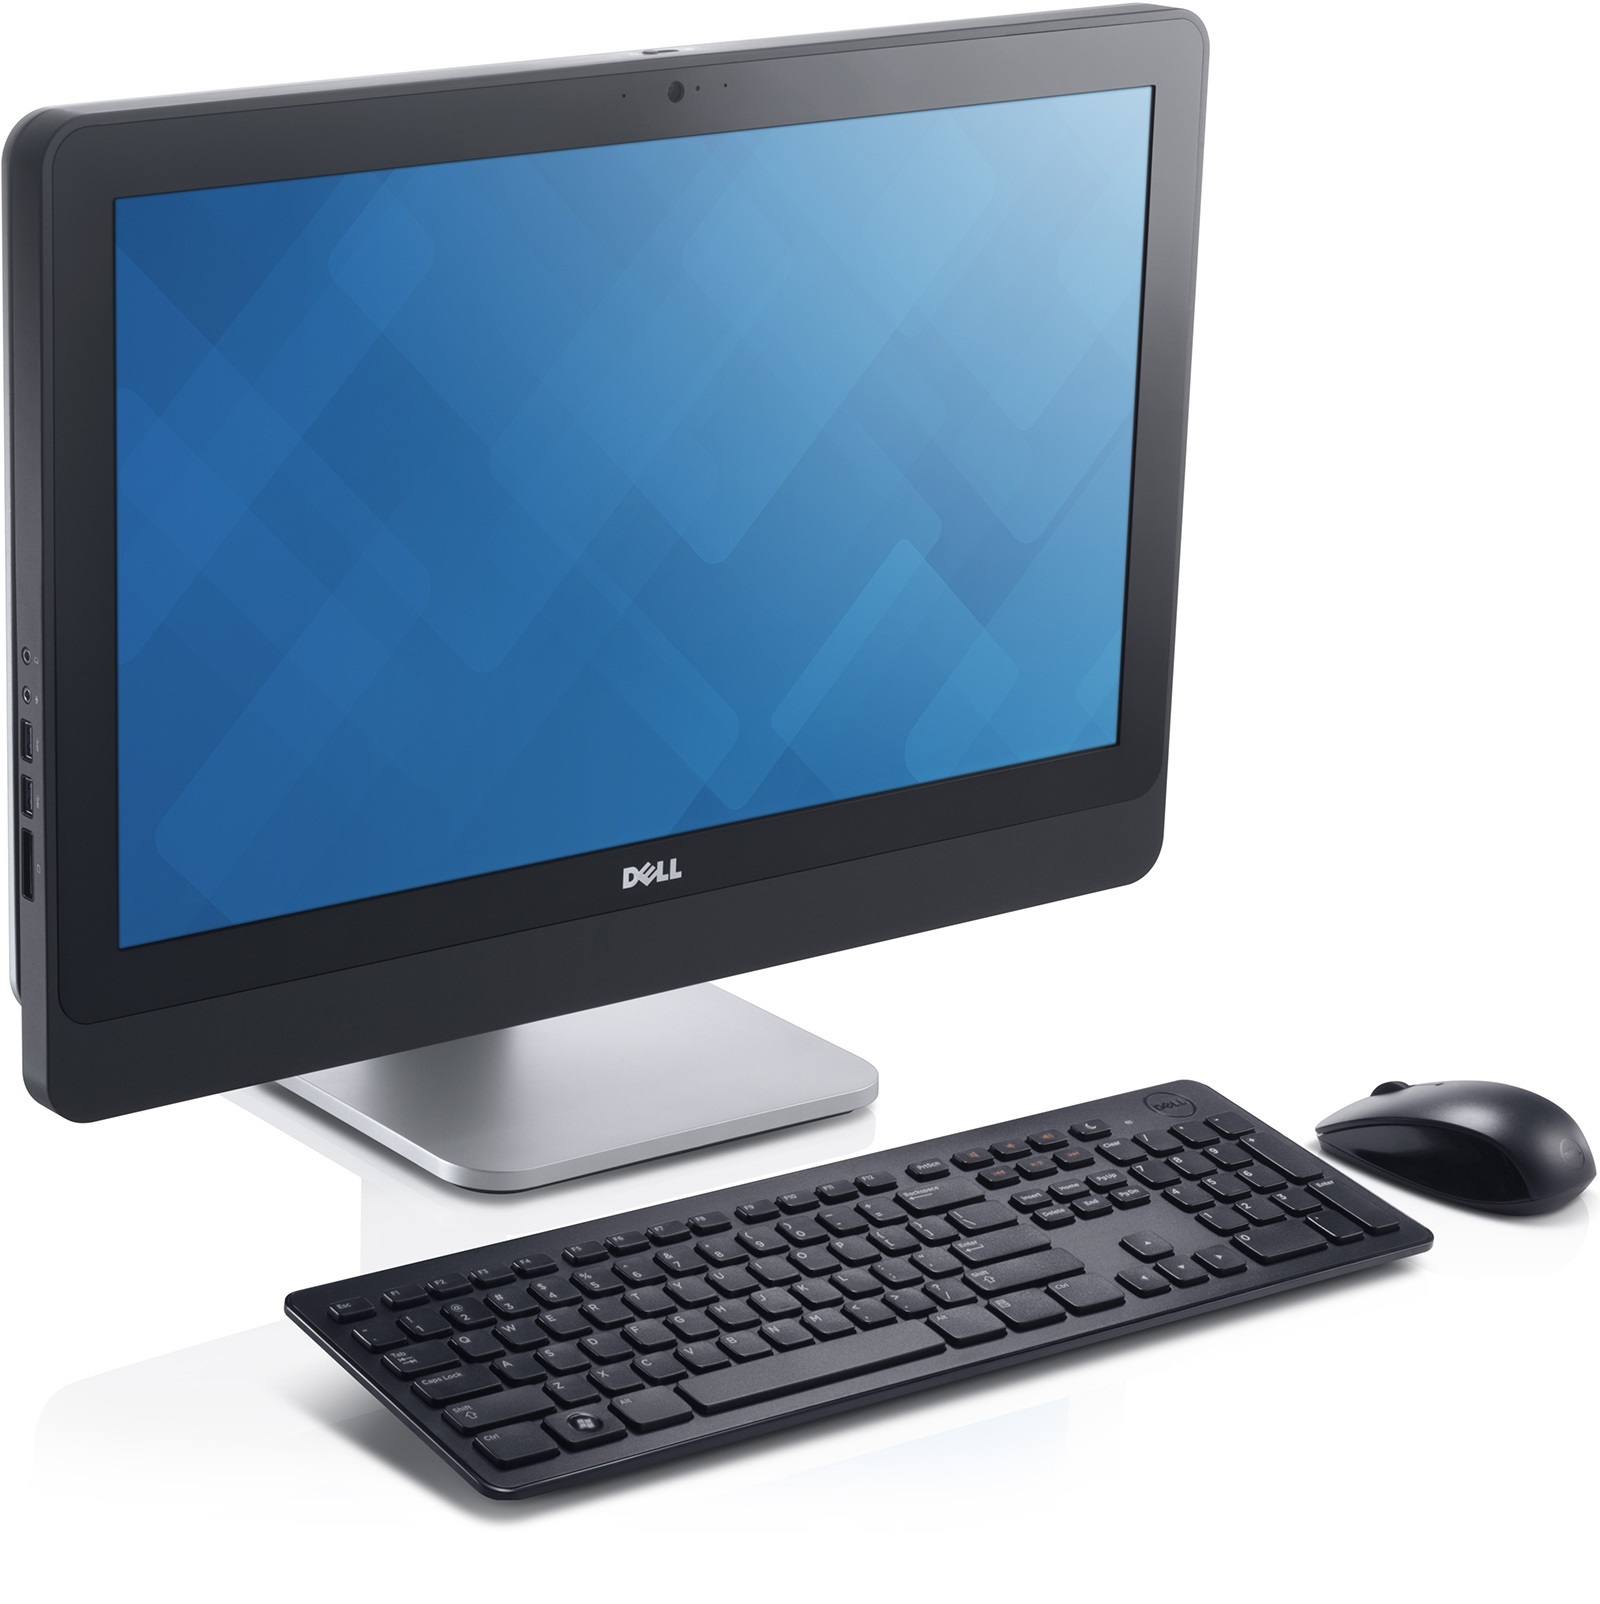 Máy tính để bàn Dell 3030 - Intel Core i5 4590S, 4G RAM, 1T HDD, 19.5 inch